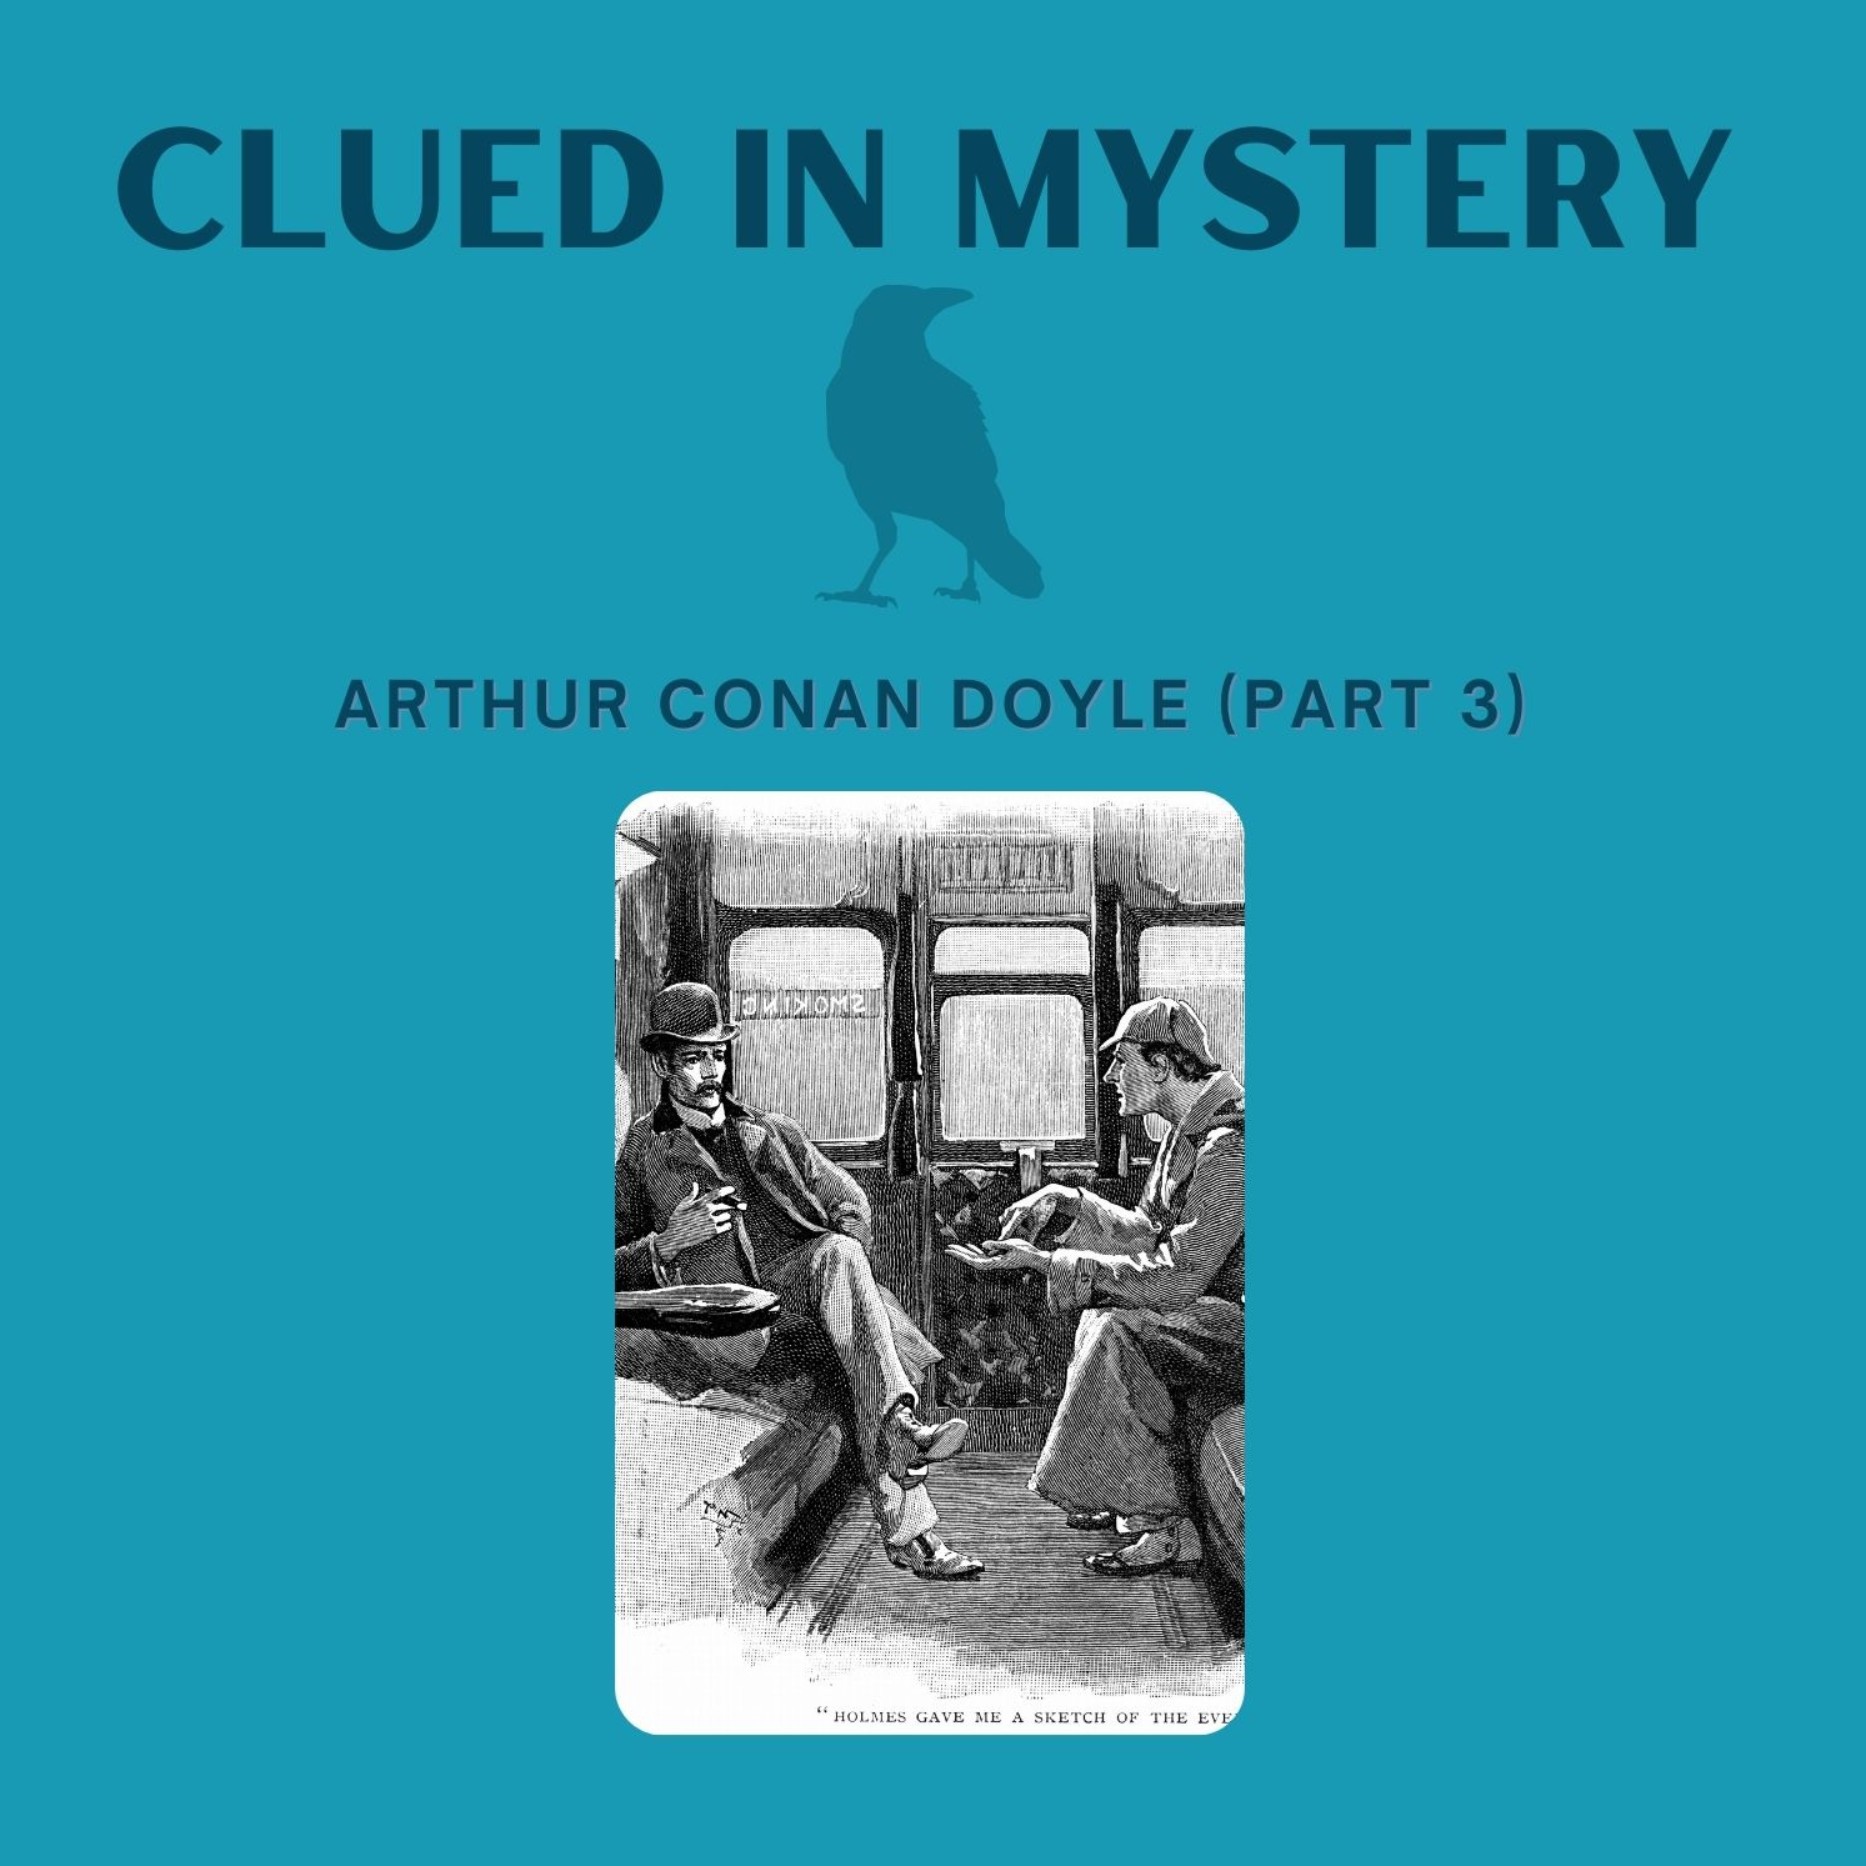 Arthur Conan Doyle (part 3)